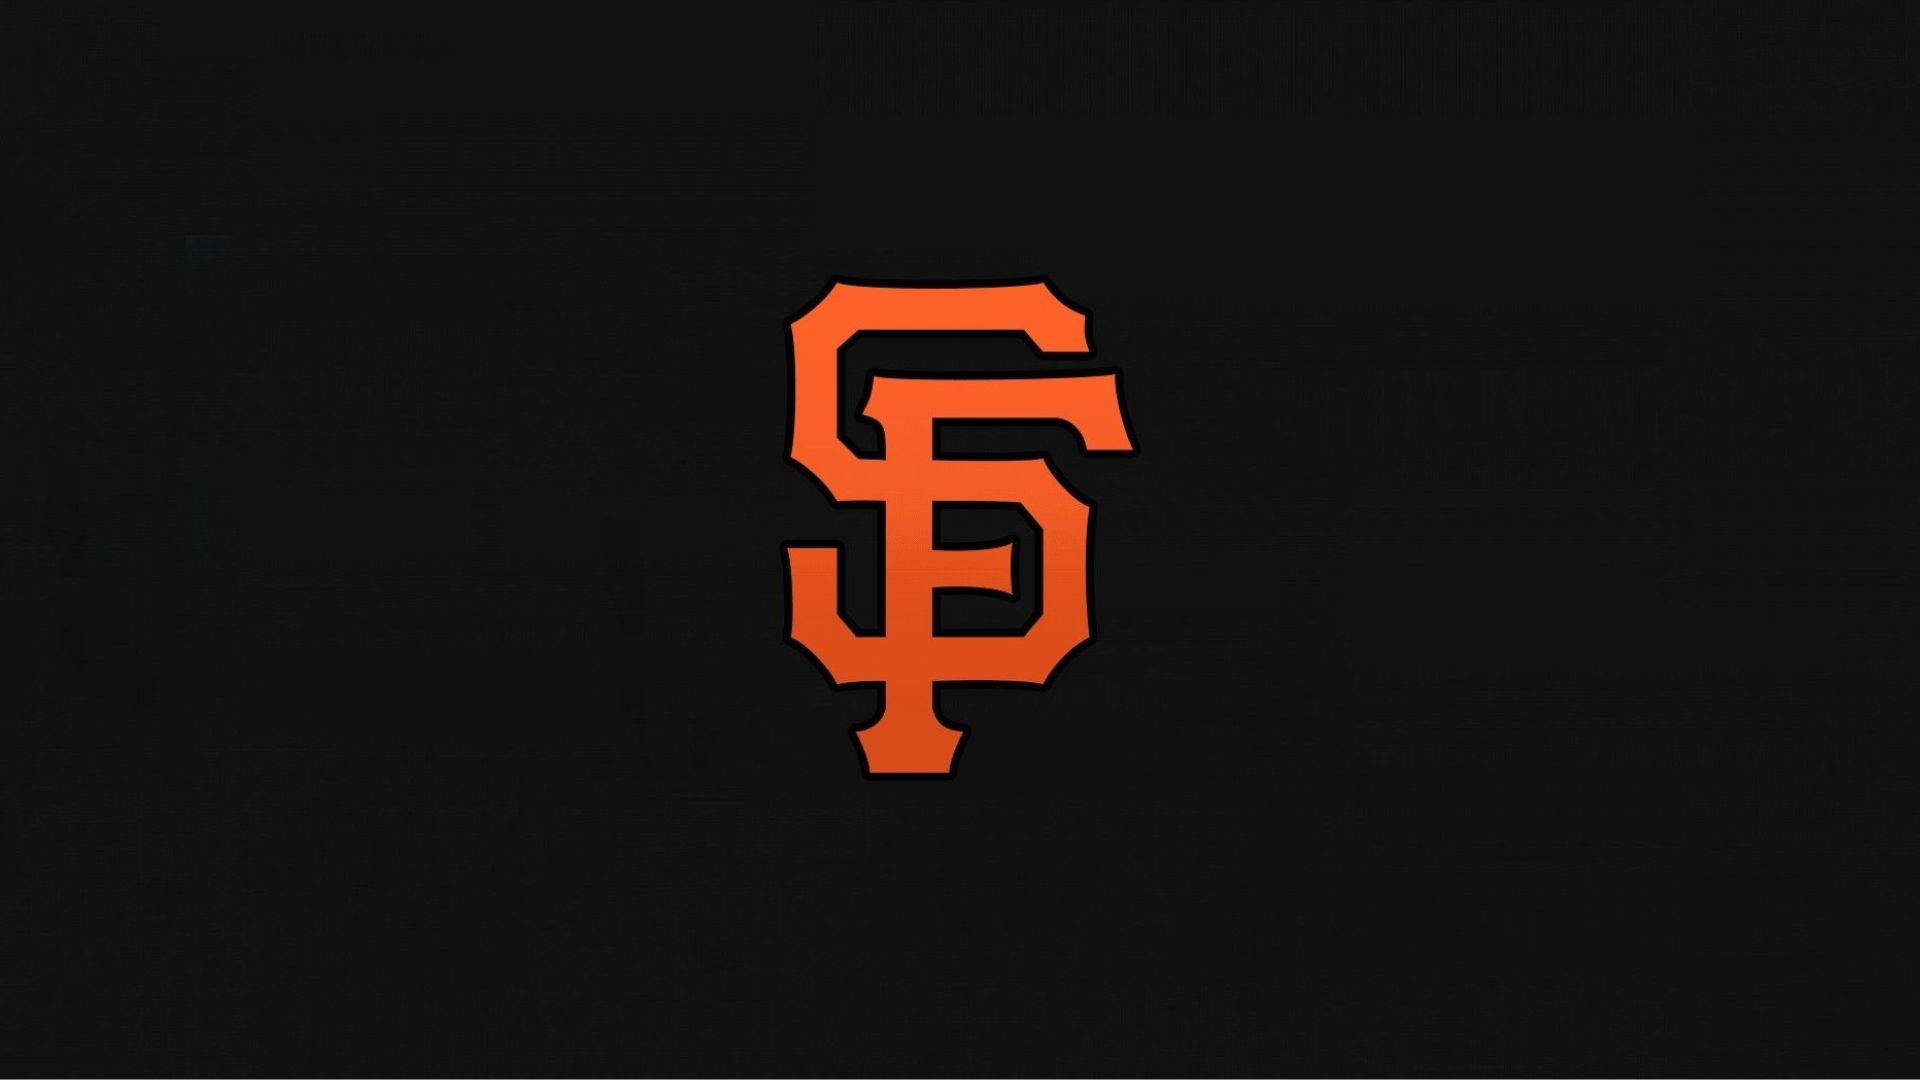 San Francisco Giants Logo In Dark